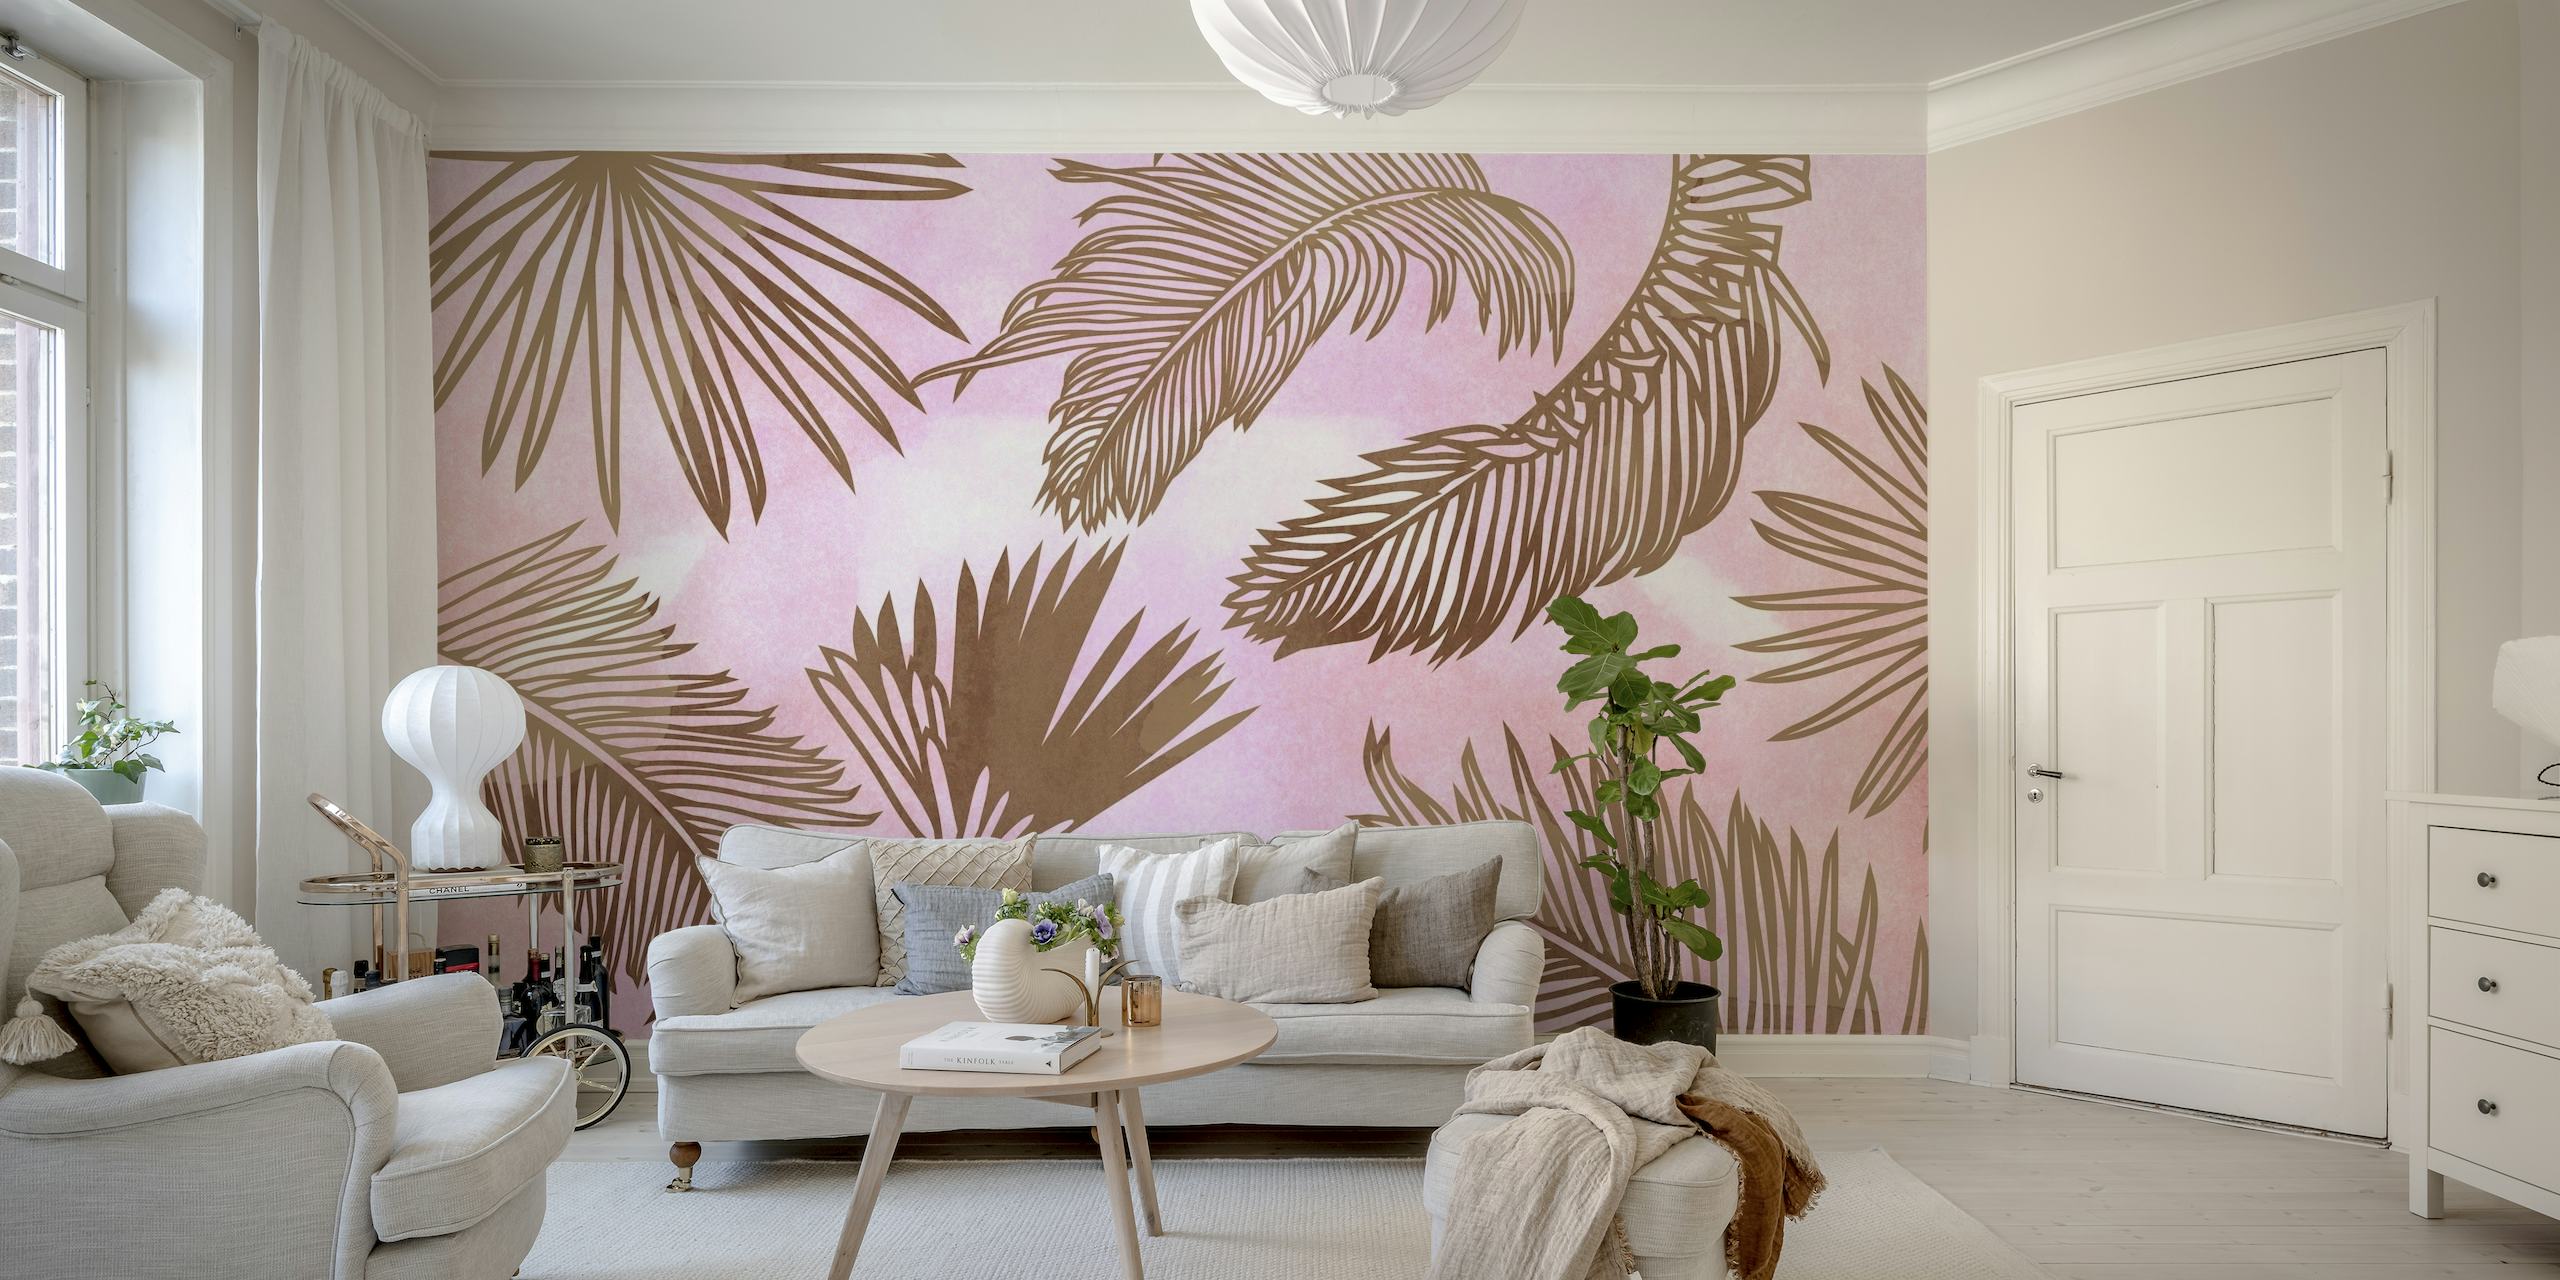 pastelfarvet vægmaleri med jungletema med akvareleffekt